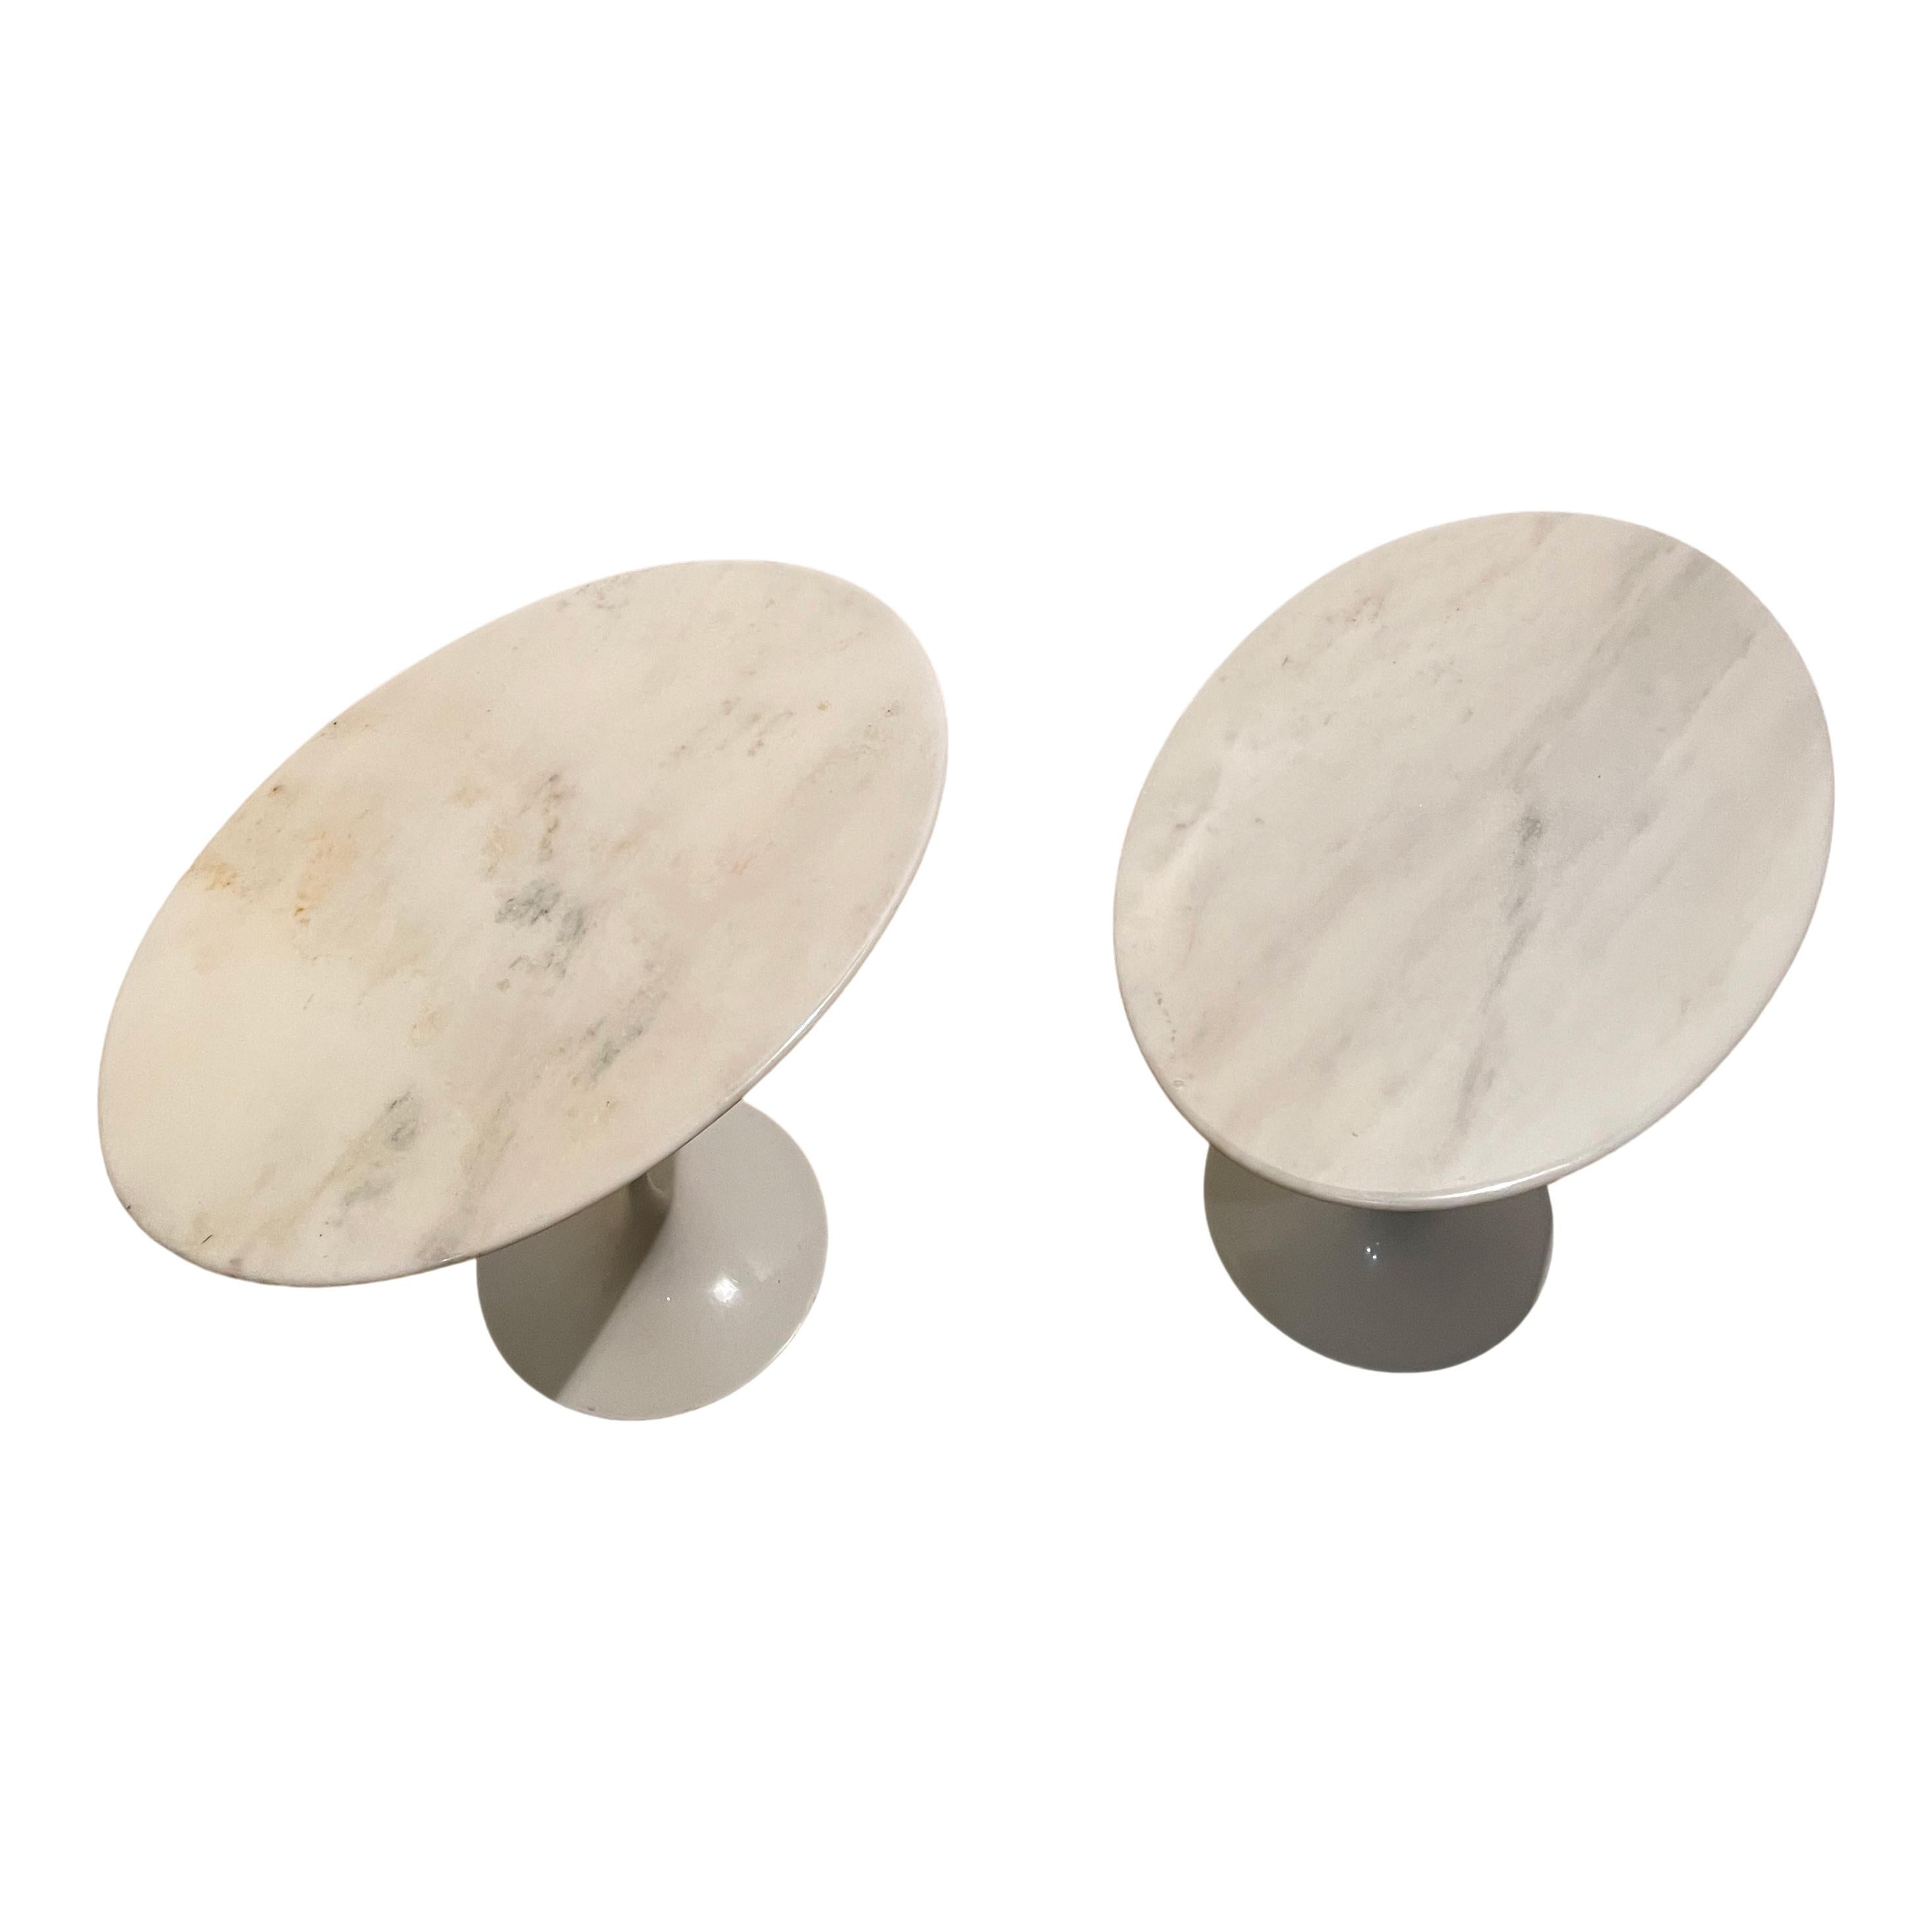 Paire de tables de nuit Tulipe conçues par Eero Saarinen en 1957 et fabriquées par Knoll en 1967.

Composé d'un socle laqué blanc et d'un plateau de table en marbre de Carrare Arabescato.

Excellent état vintage.

La table Tulip du designer Eero